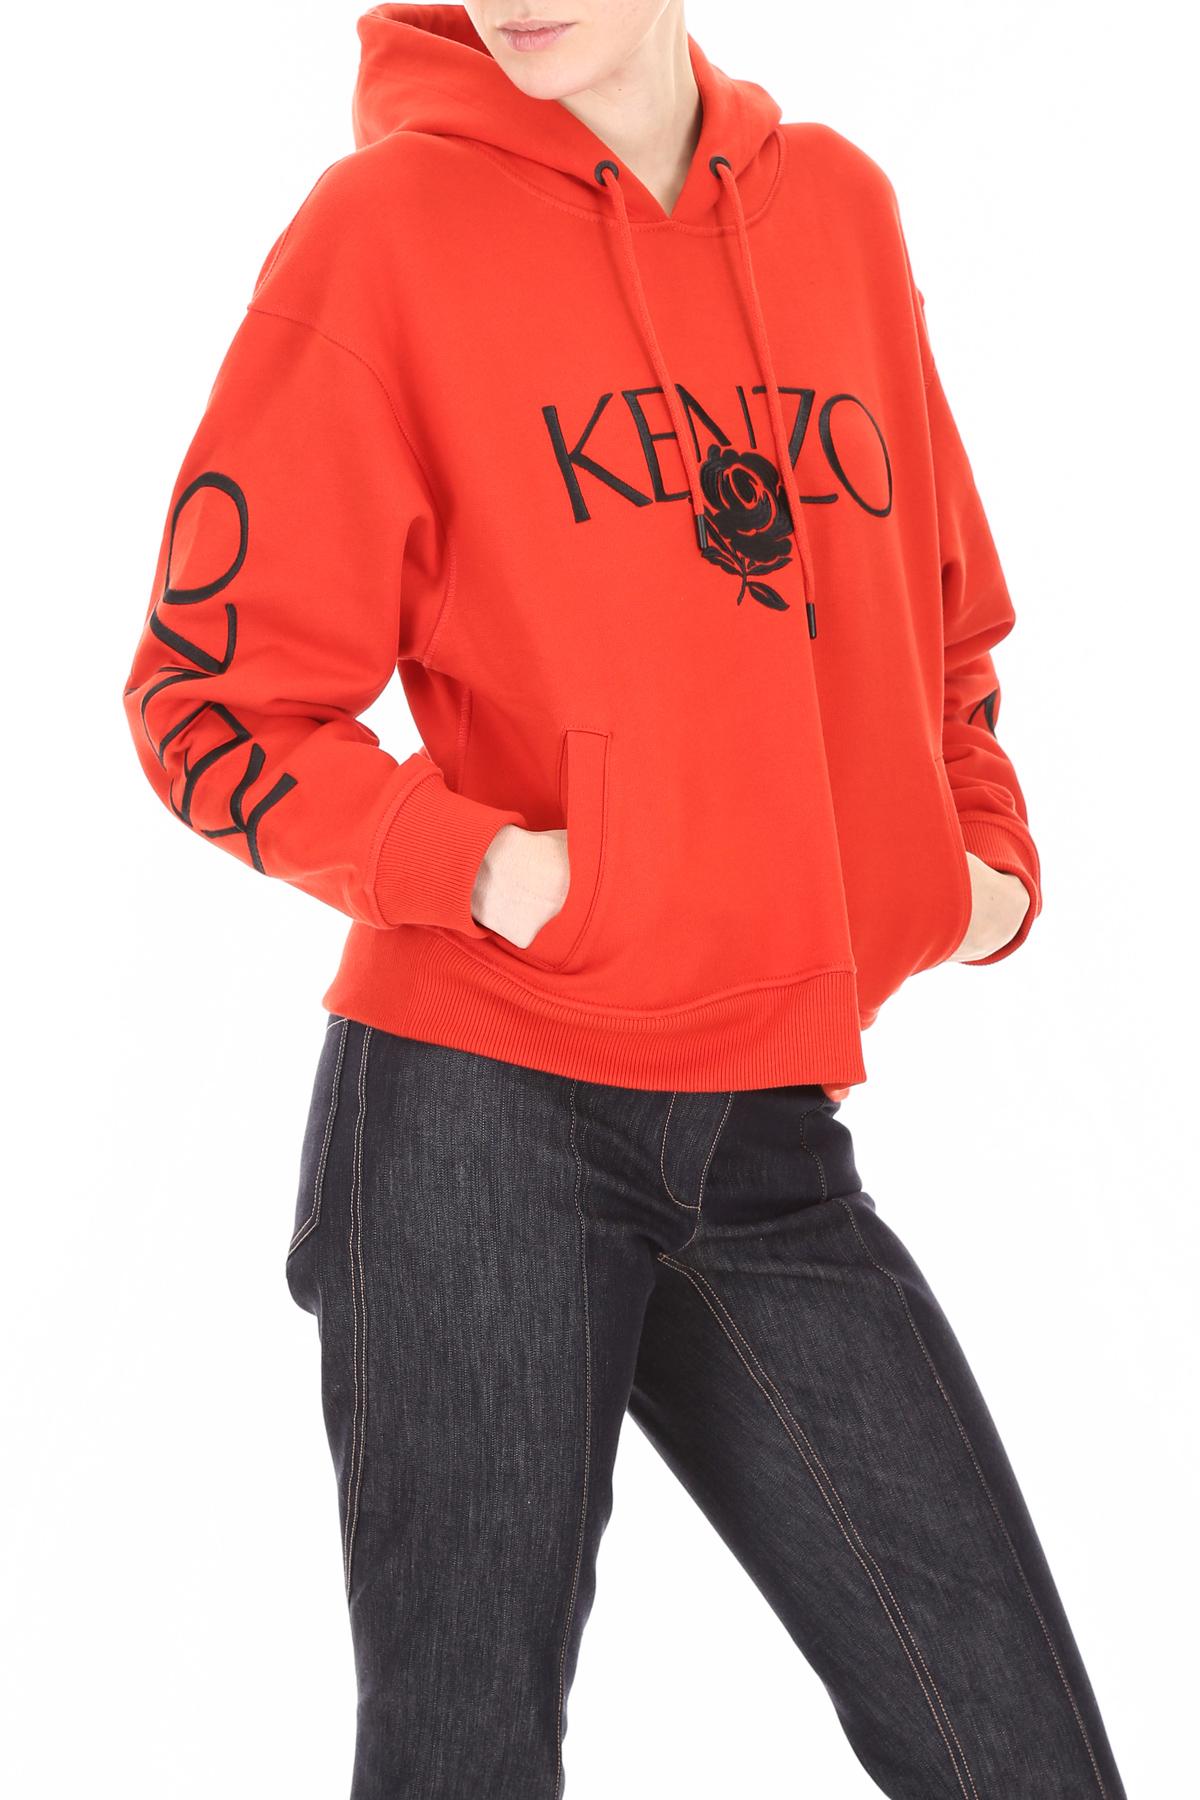 kenzo rose hoodie